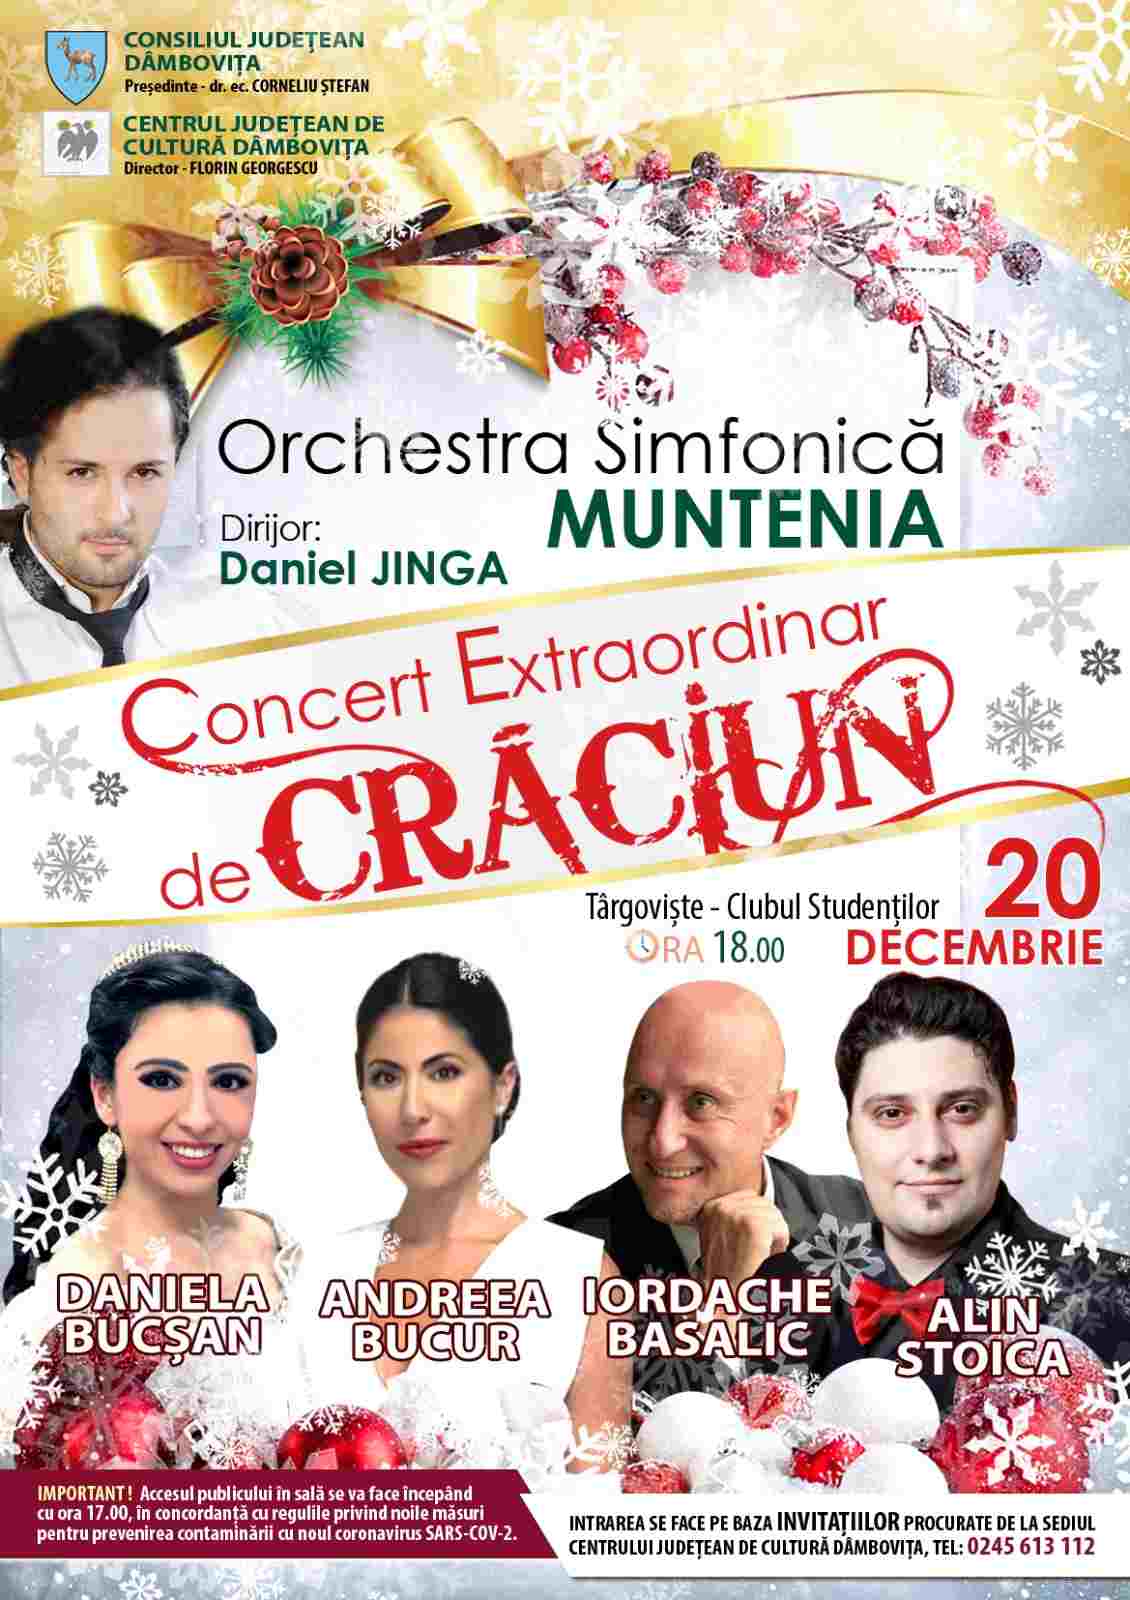  Concert extraordinar de Crăciun, susținut de Orchestra Simfonică „Muntenia”